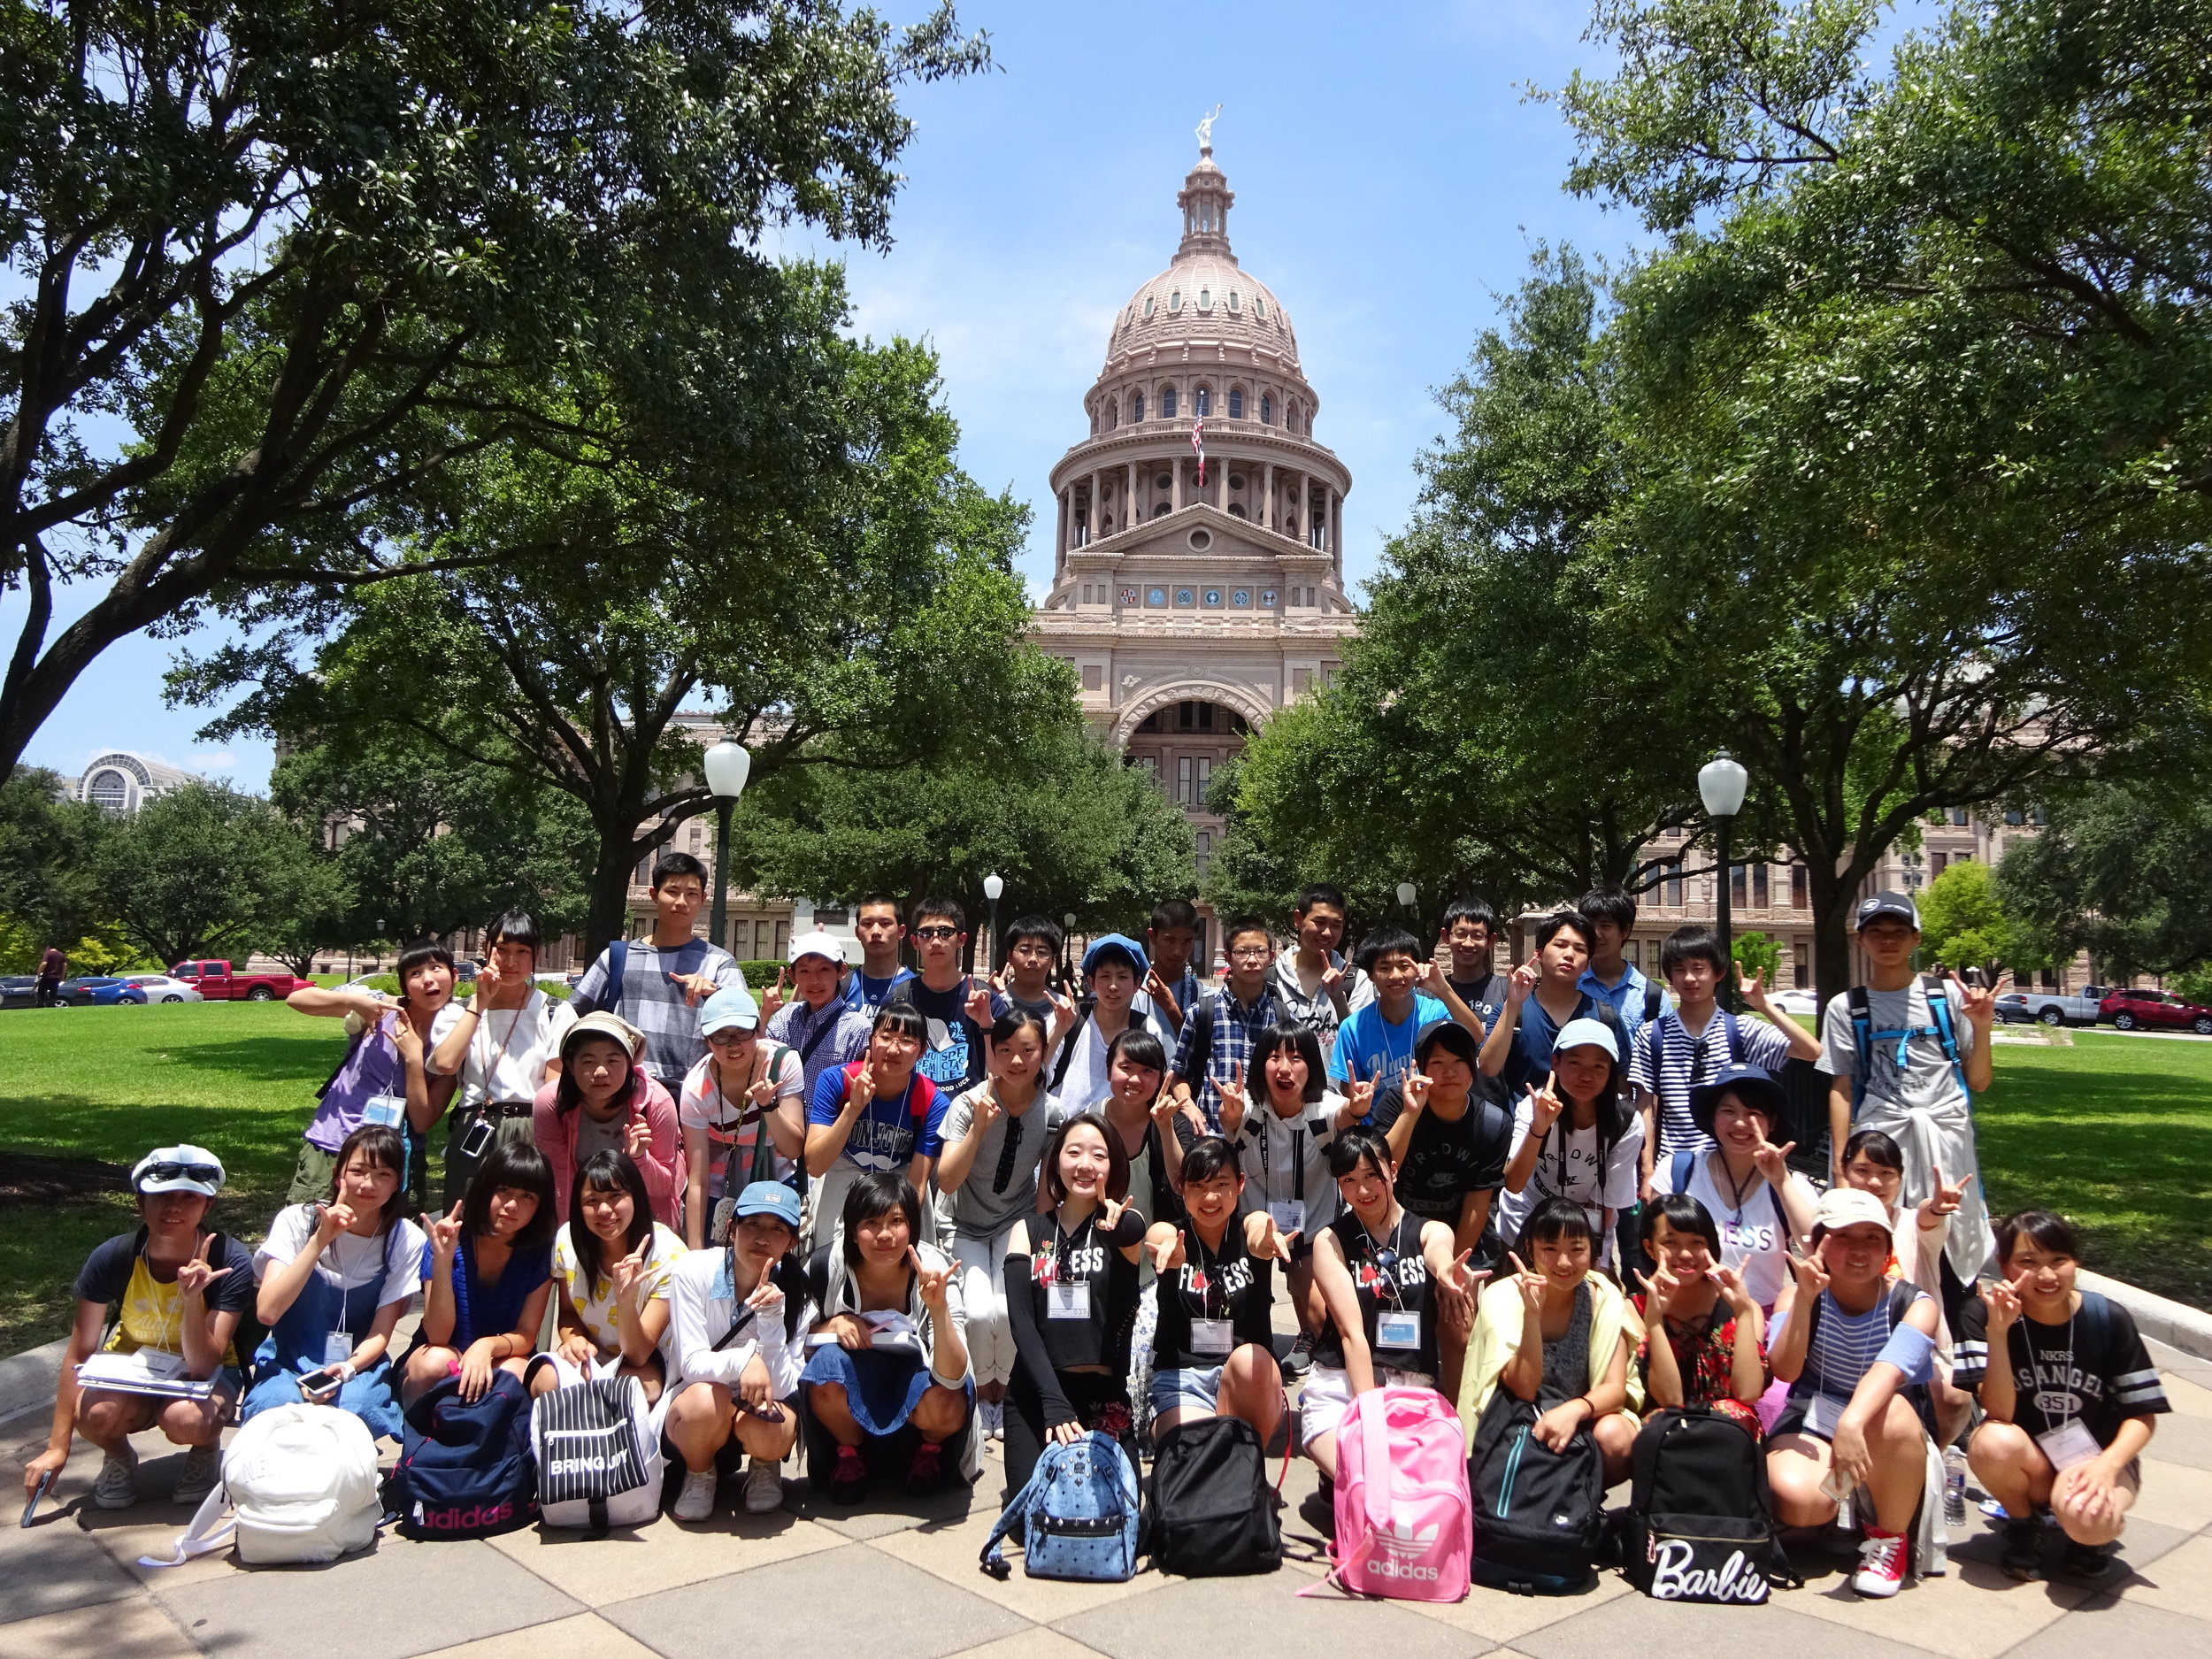 世界杯竞猜项目学生在德克萨斯州议会大厦的合影